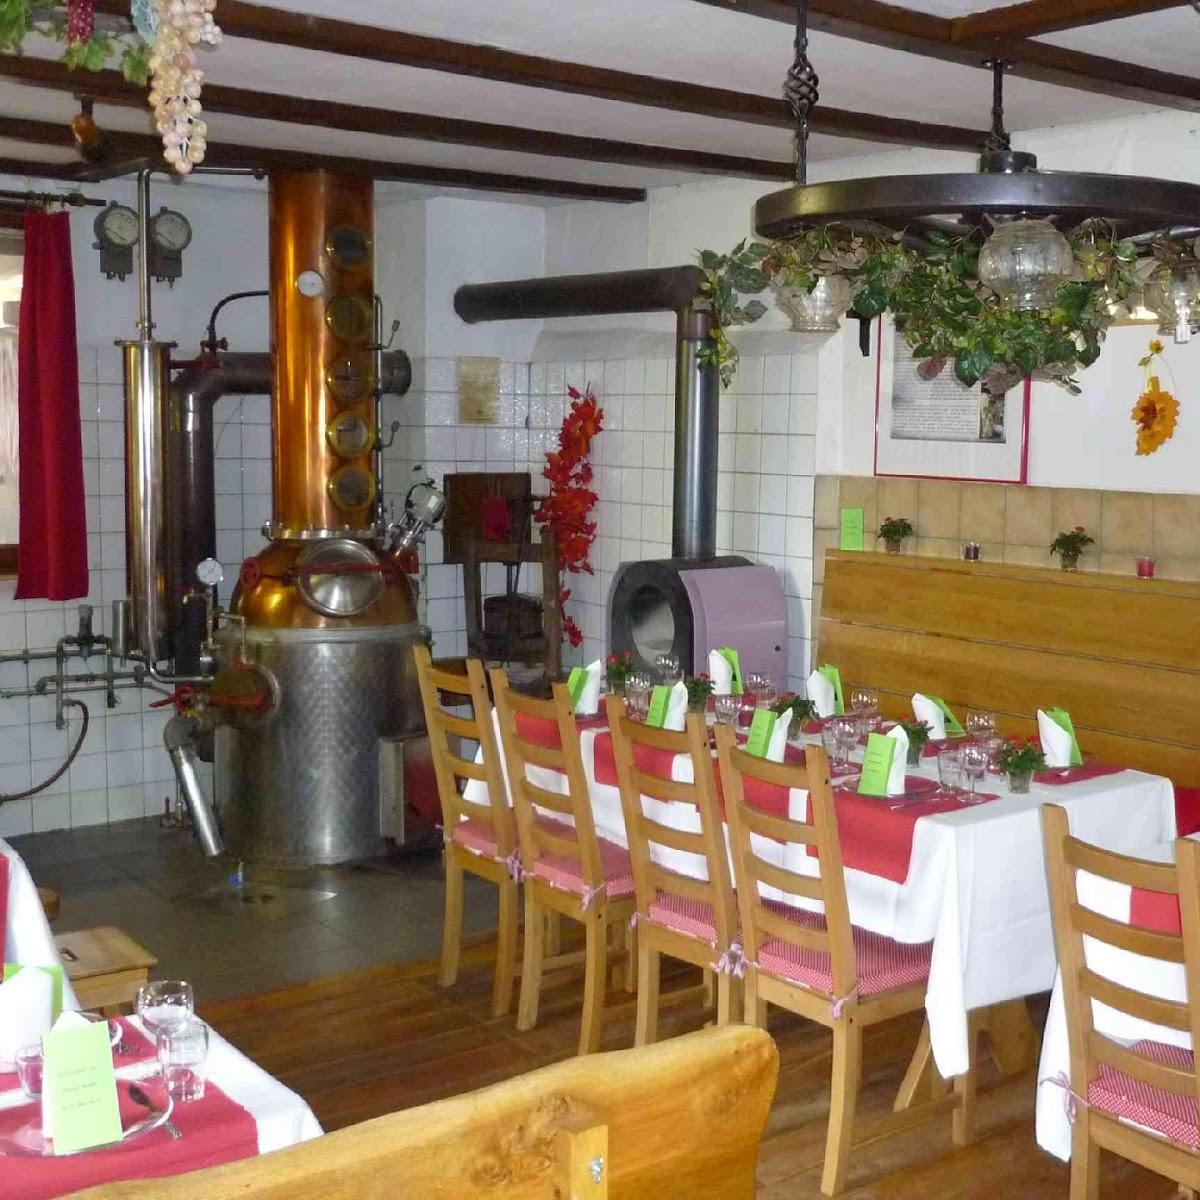 Restaurant "Zieglers Brennstub & Whiskybrennerei" in Baltmannsweiler